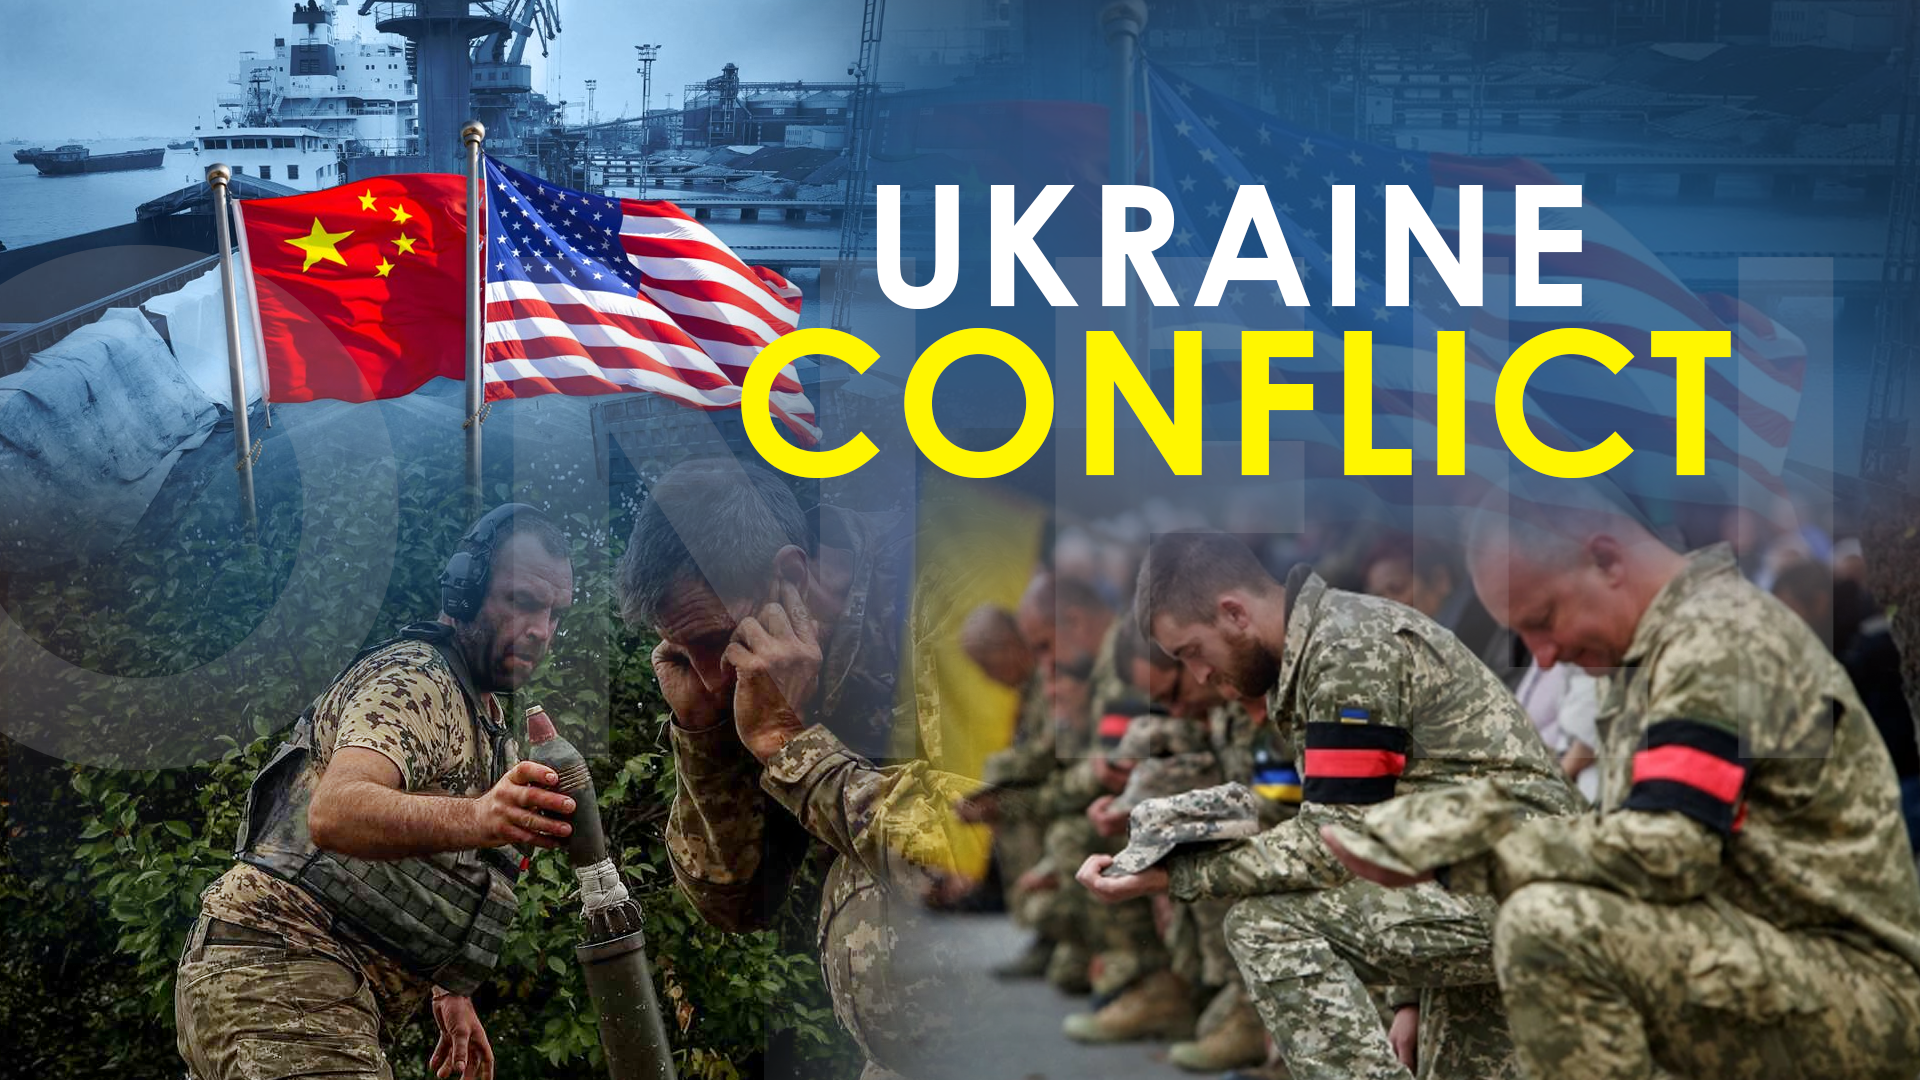 Ukraine Receives US Missile Shield “Defense” System